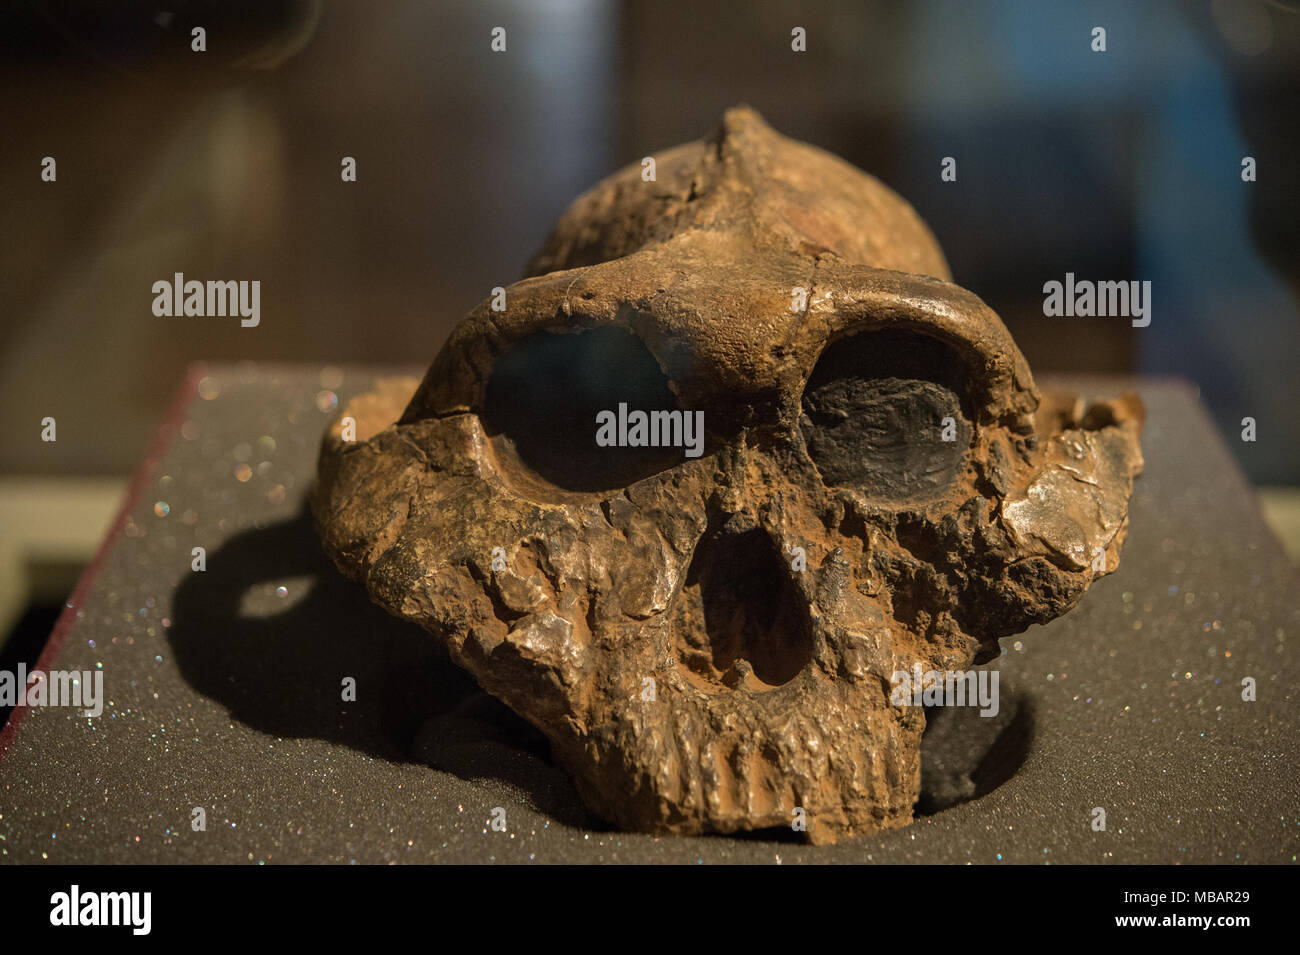 Schädel von Hominiden, Paranthropus boisei, australopithecinen. 2,6 - 1,2 Millionen Jahre alt, Ost Afrika. Pliozäne und pleistozäne Alter. Nairobi Museum Stockfoto